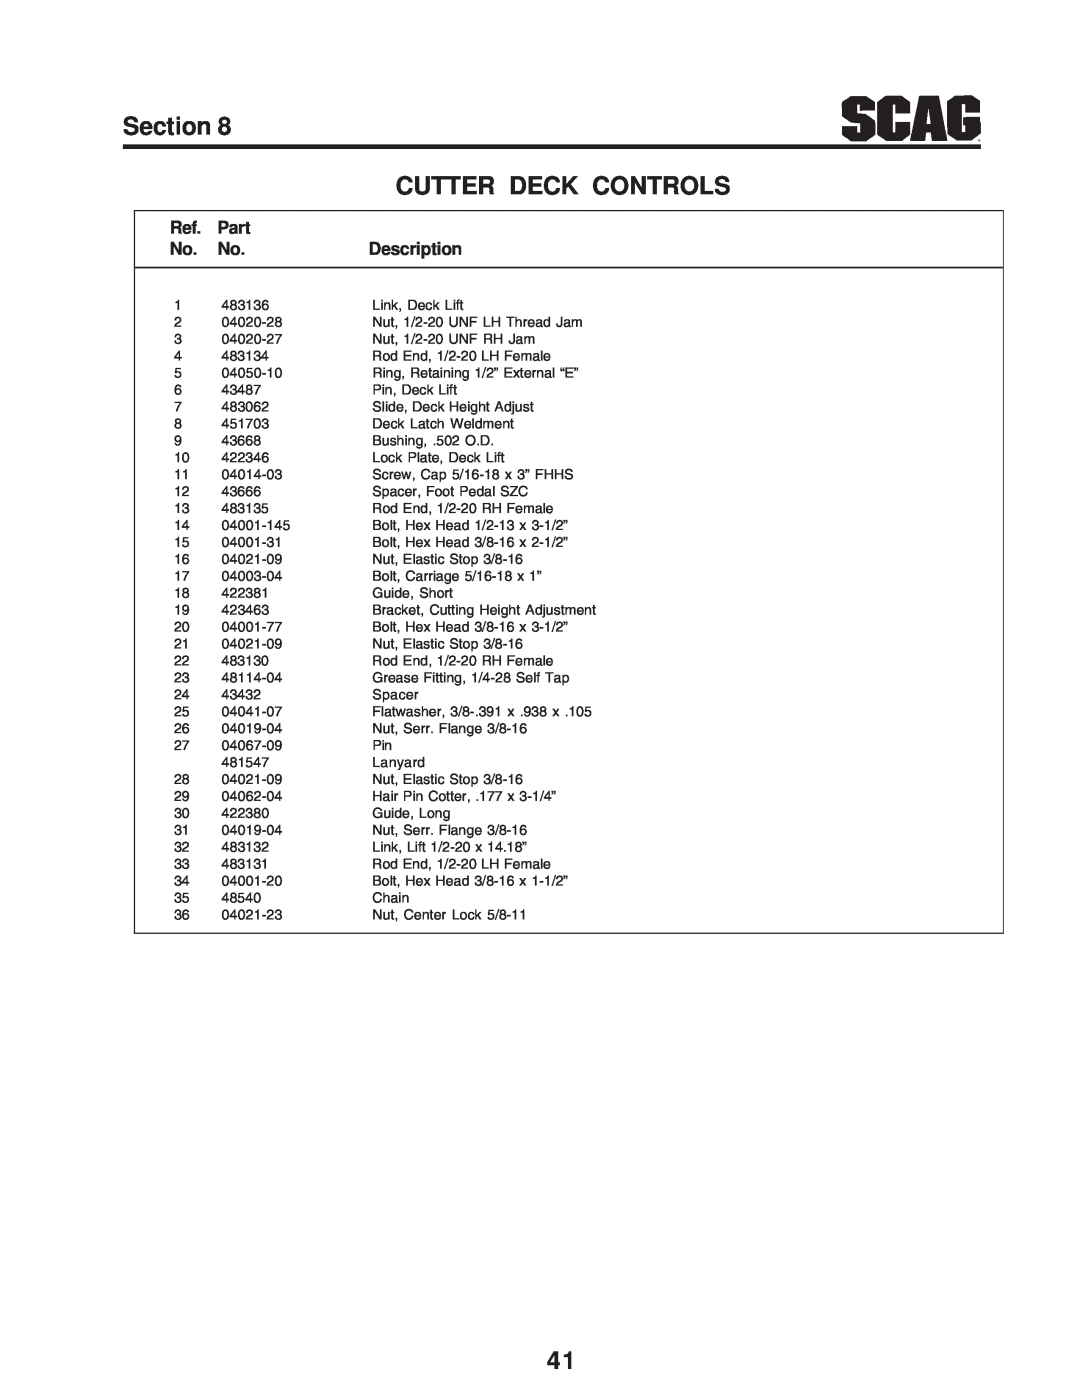 Scag Power Equipment SZC manual Section, Cutter Deck Controls, Part, Description 